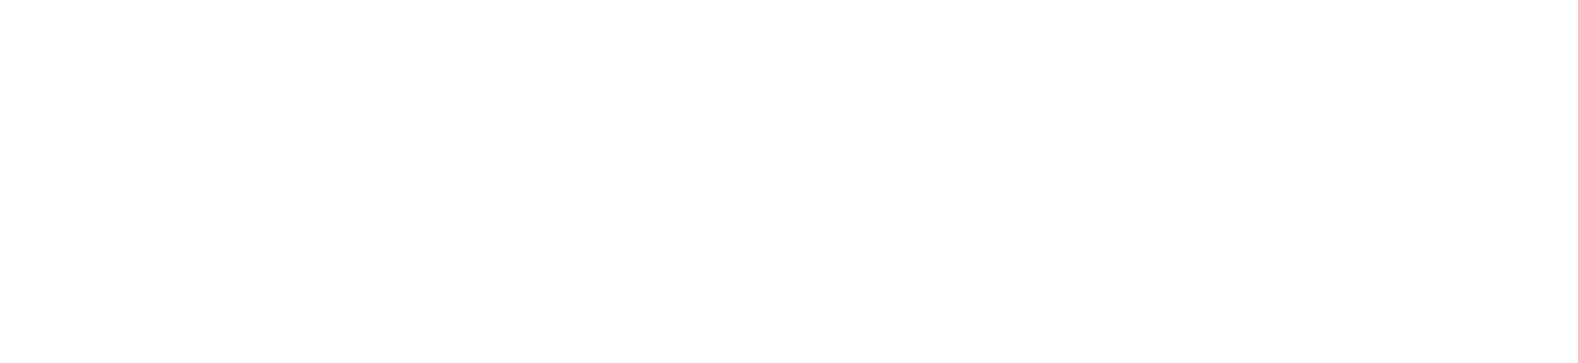 Another Reality Studio Logo White